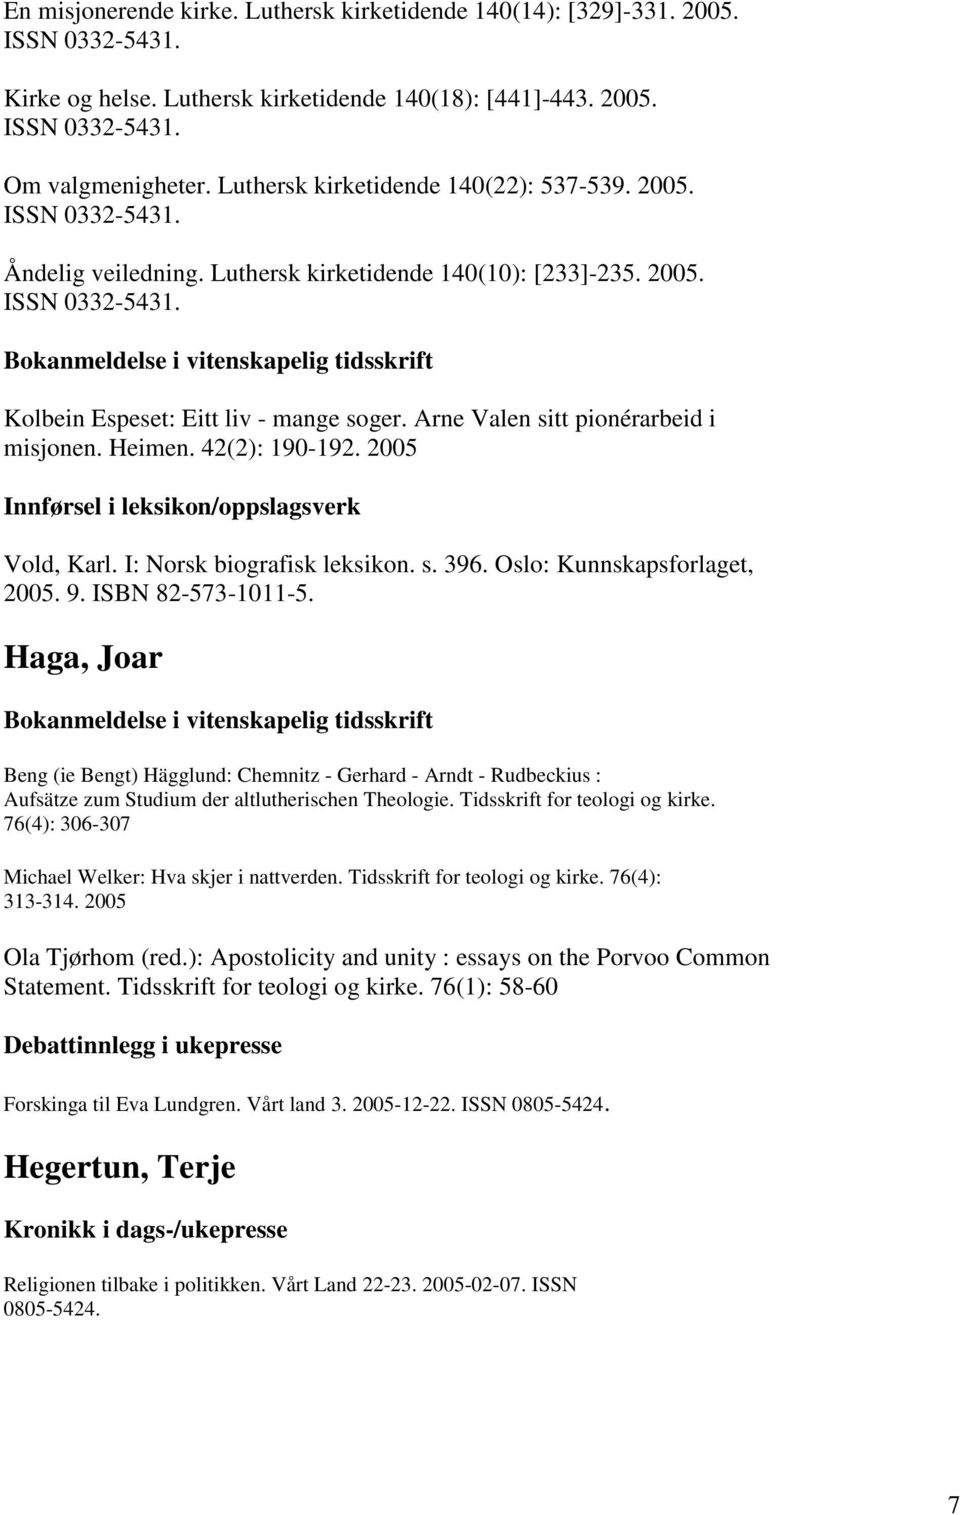 Arne Valen sitt pionérarbeid i misjonen. Heimen. 42(2): 190-192. 2005 Innførsel i leksikon/oppslagsverk Vold, Karl. I: Norsk biografisk leksikon. s. 396. Oslo: Kunnskapsforlaget, 2005. 9.